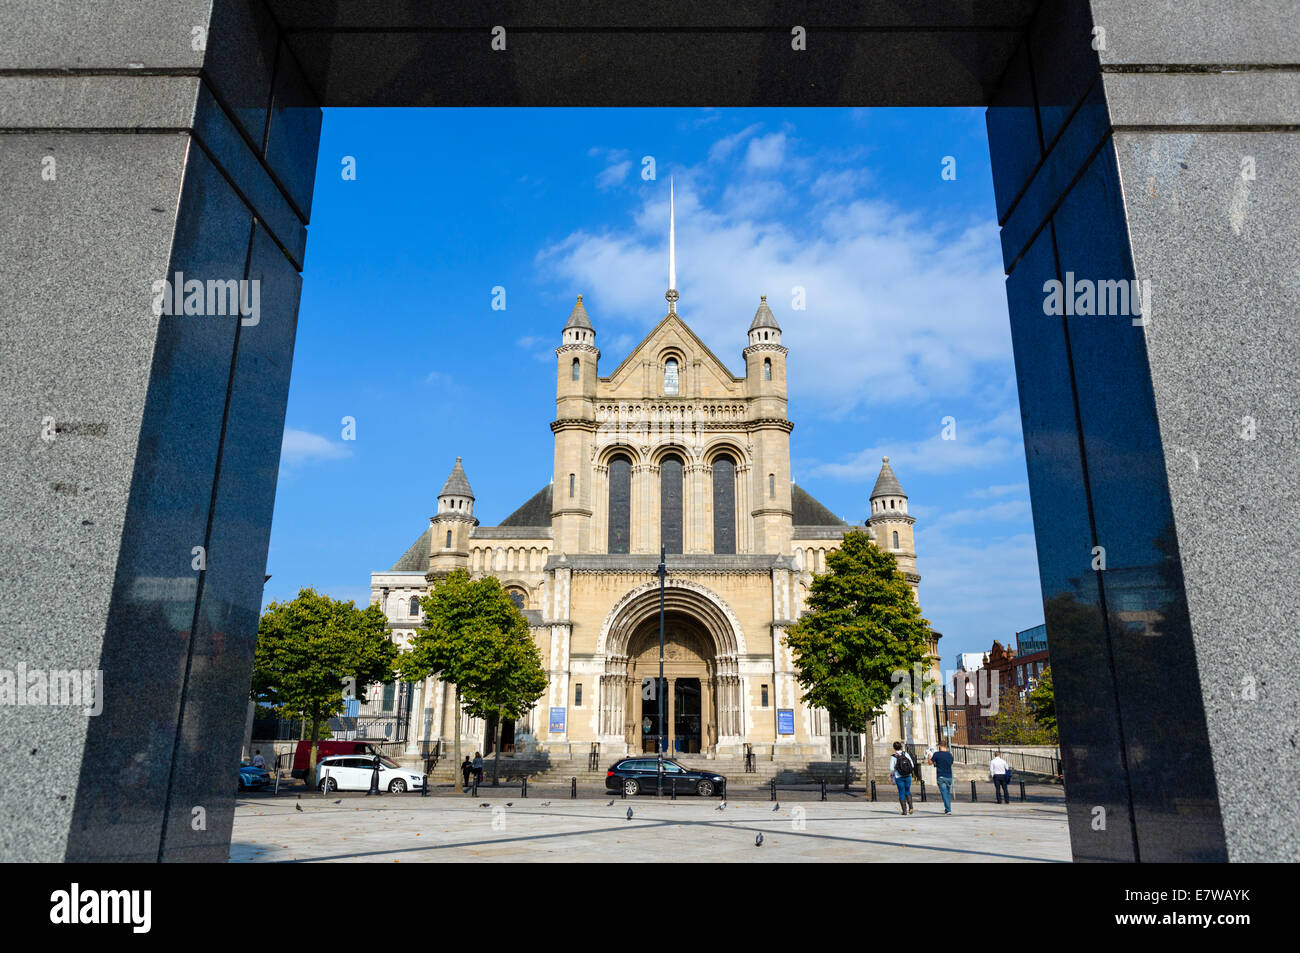 St Anne's Cathedral de Writer's Square, quartier de la cathédrale, de Belfast, en Irlande du Nord, Royaume-Uni Banque D'Images